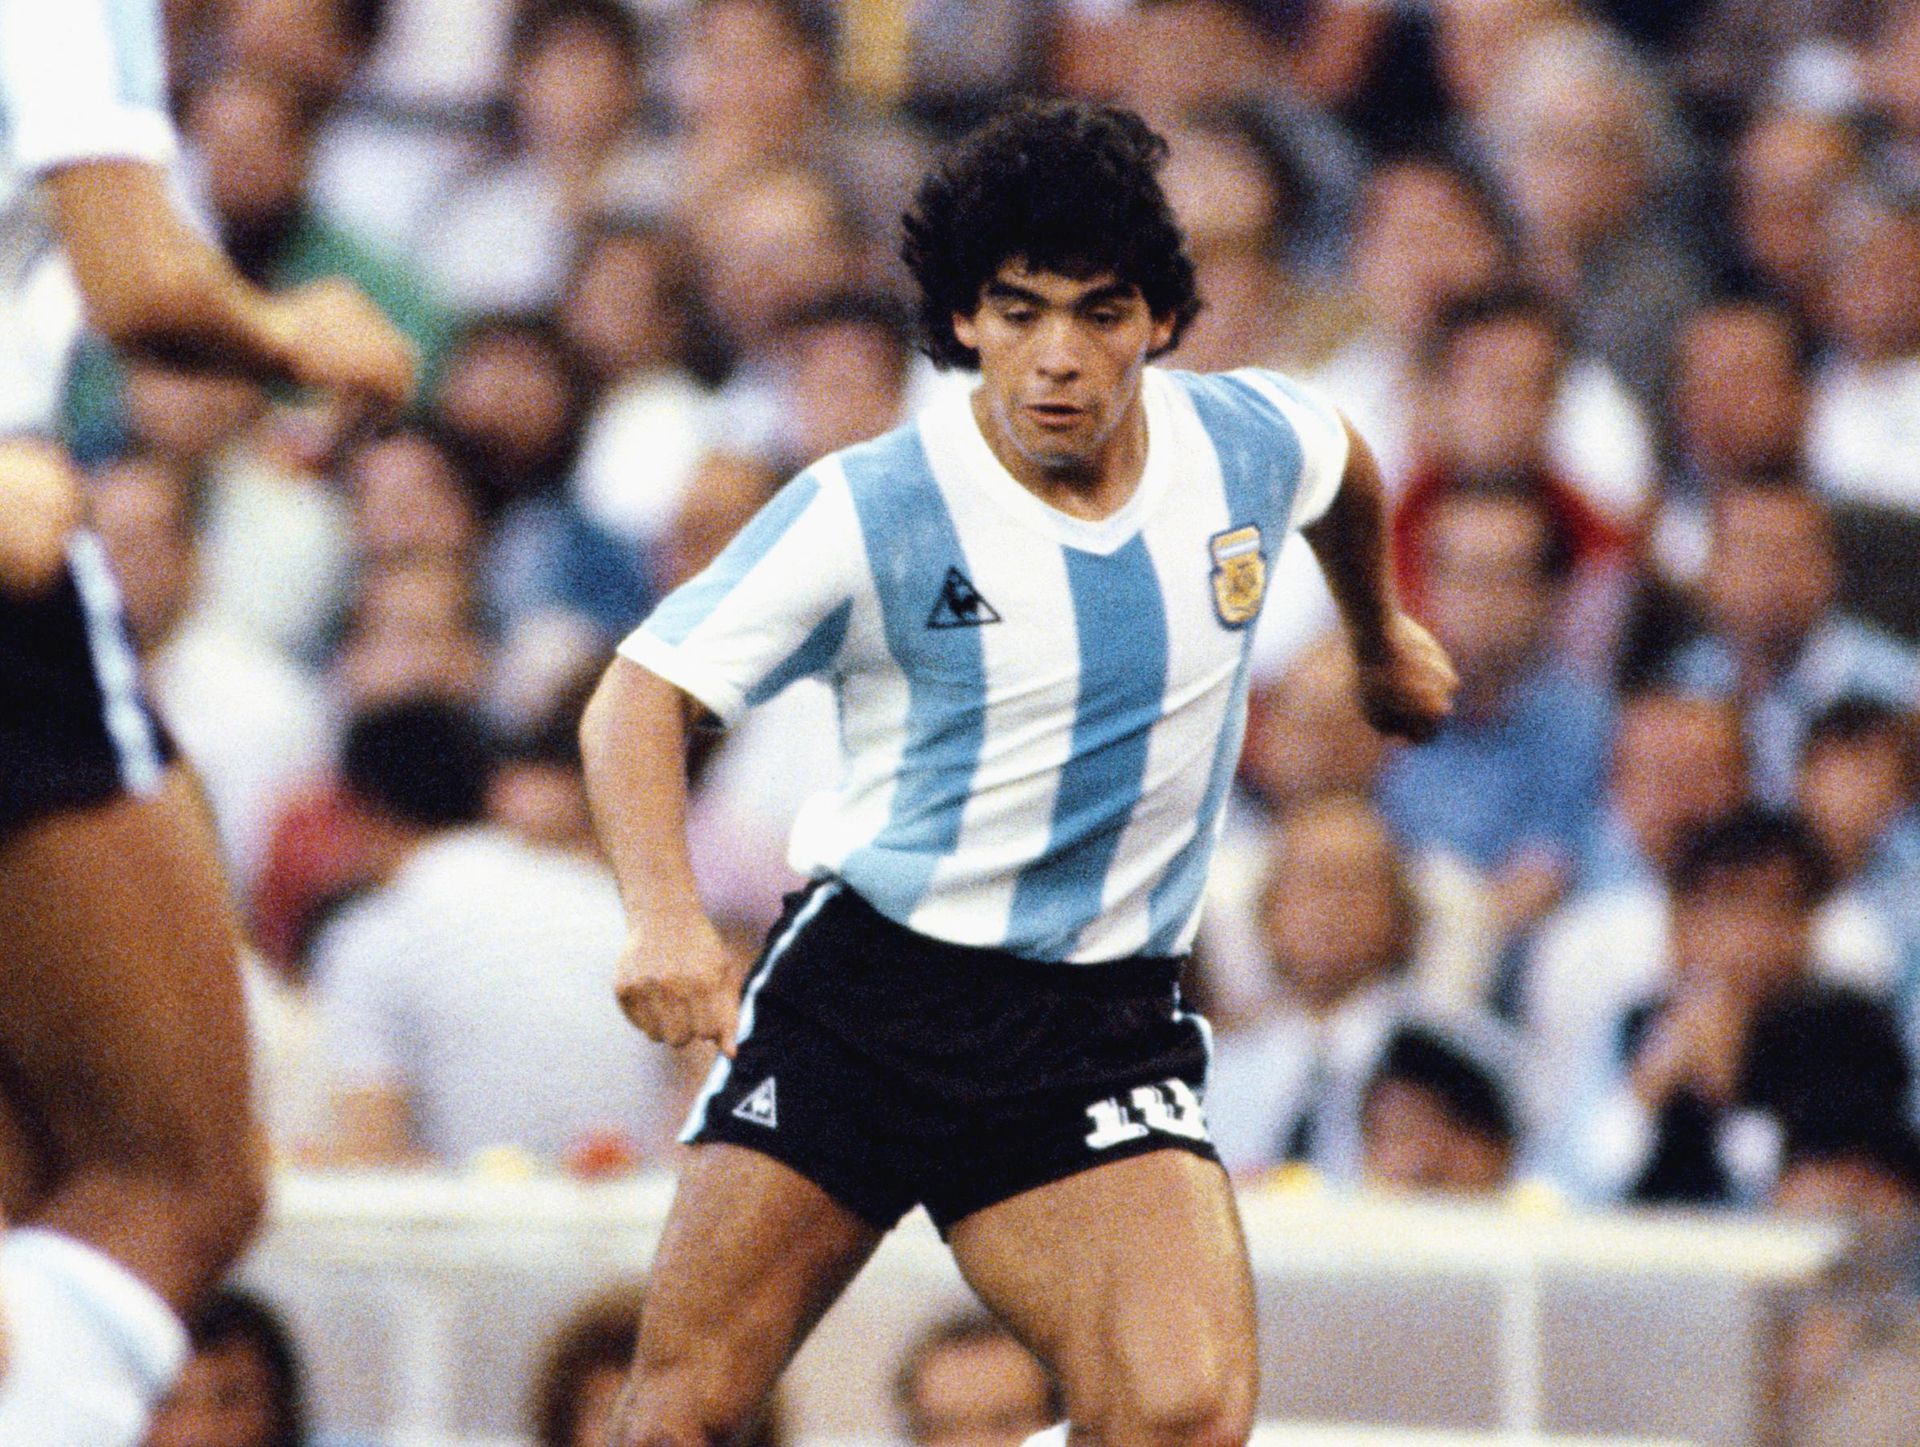 A labdarúgás csúcsára 1986-ban jutott fel, amikor vb-t nyert /Fotó: Getty Images